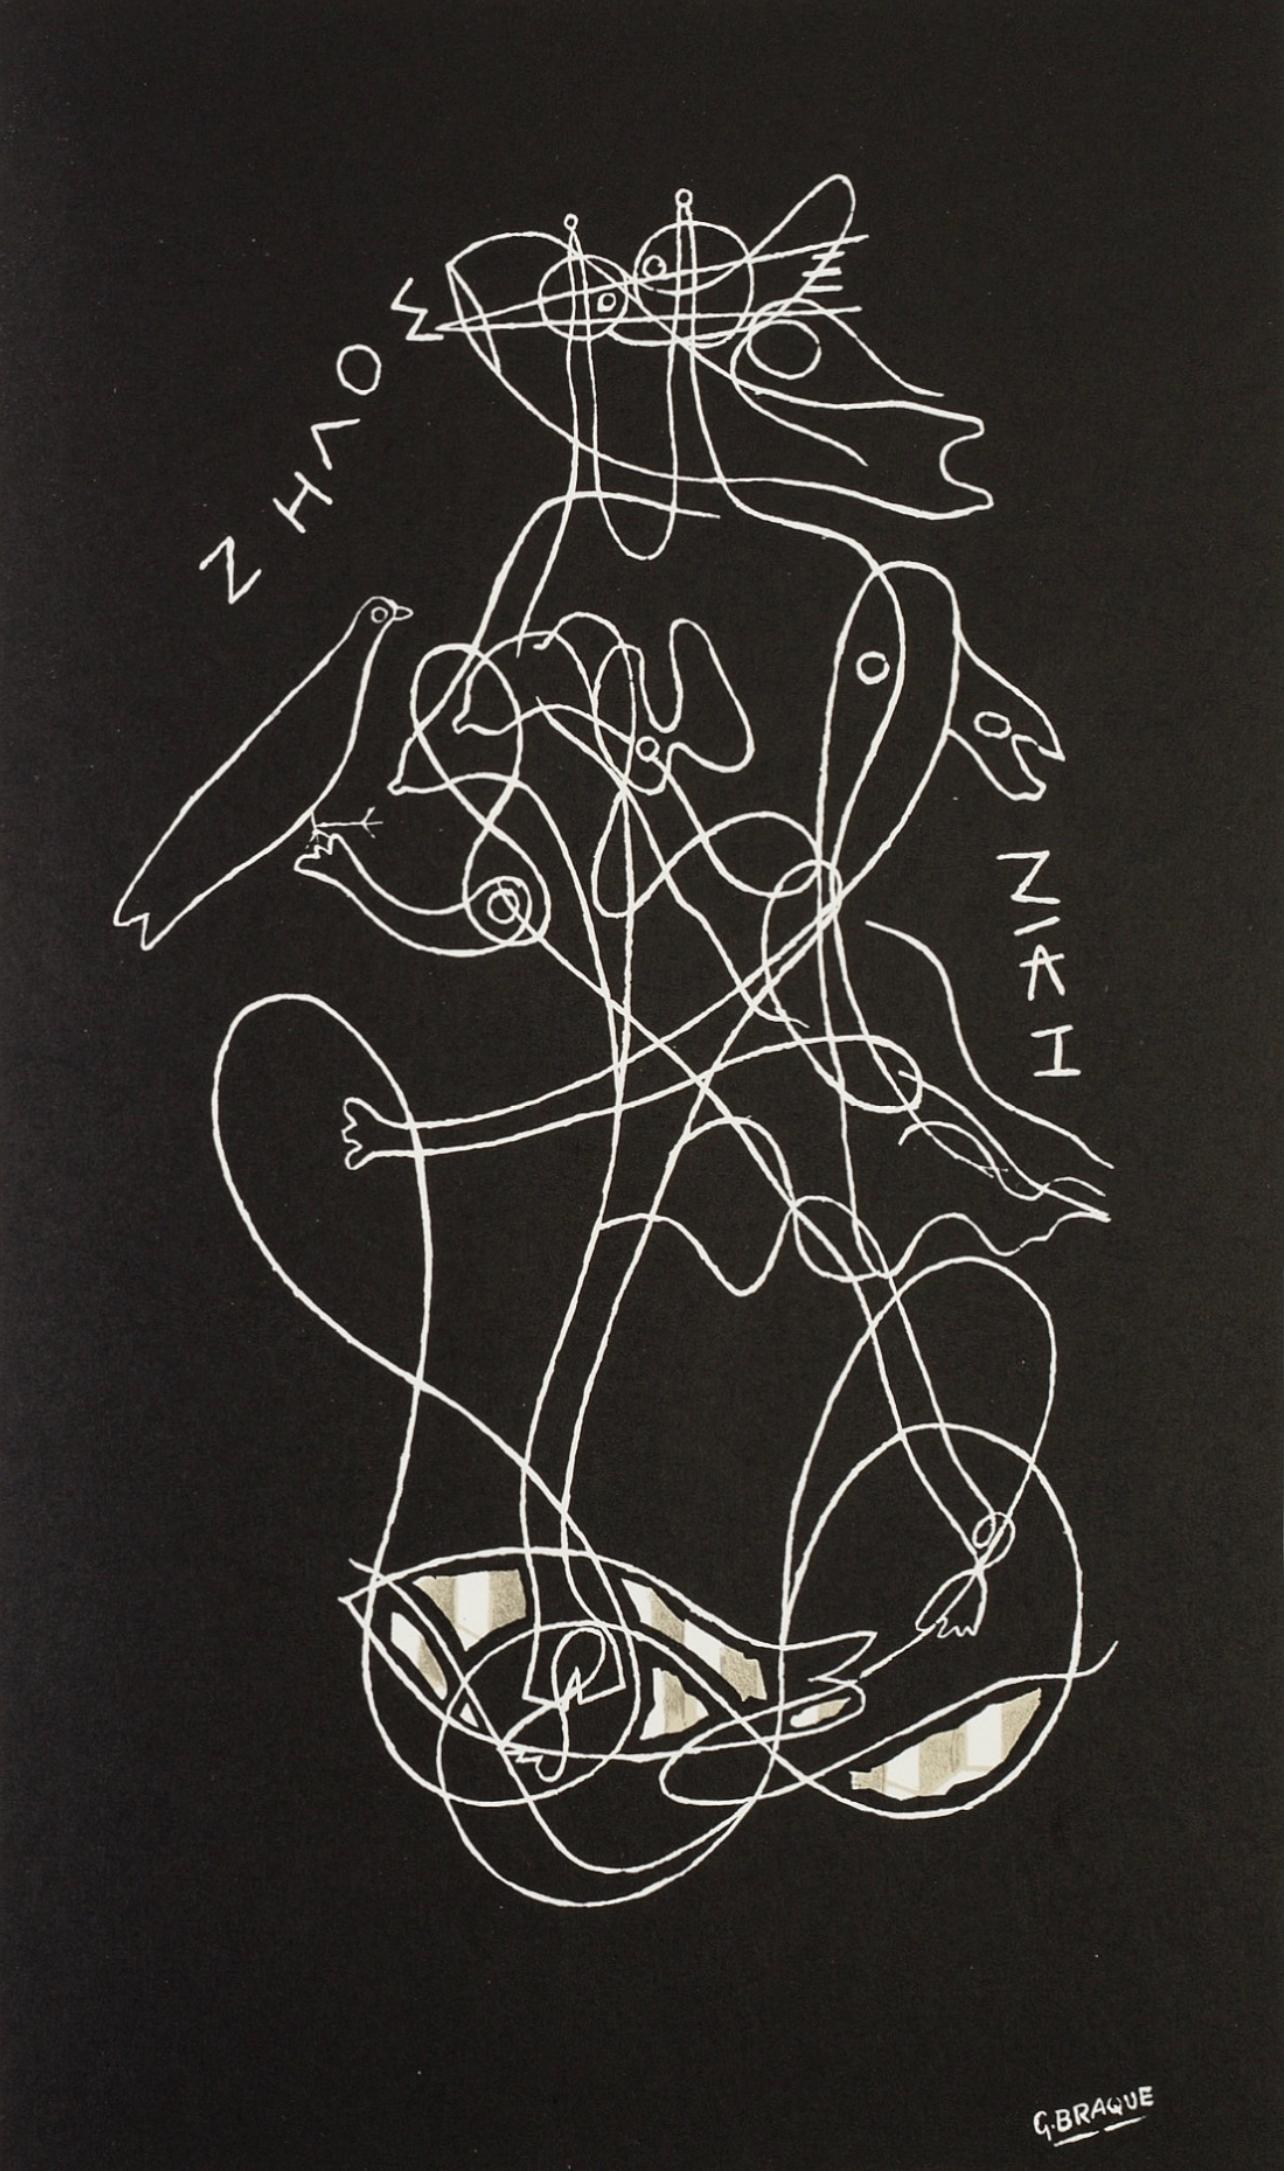 Georges Braque Abstract Print - Braque, Zelos, Derrière le miroir (after)